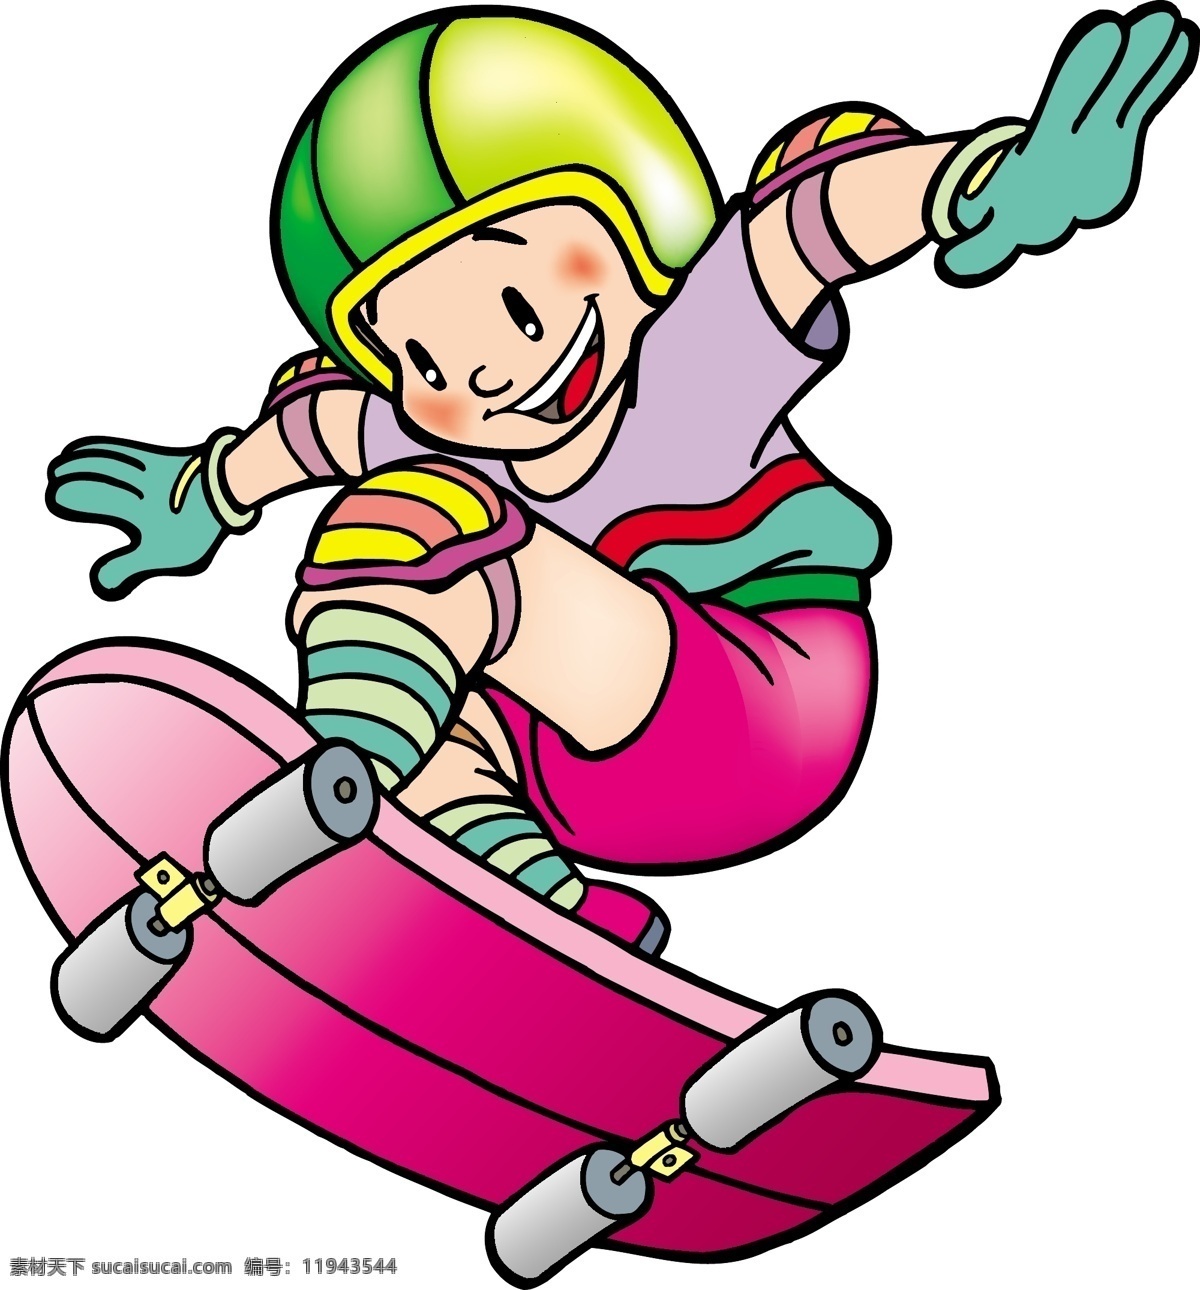 滑板少年 滑板 少年 青少年 运动 头盔 护具 儿童幼儿 矢量人物 矢量